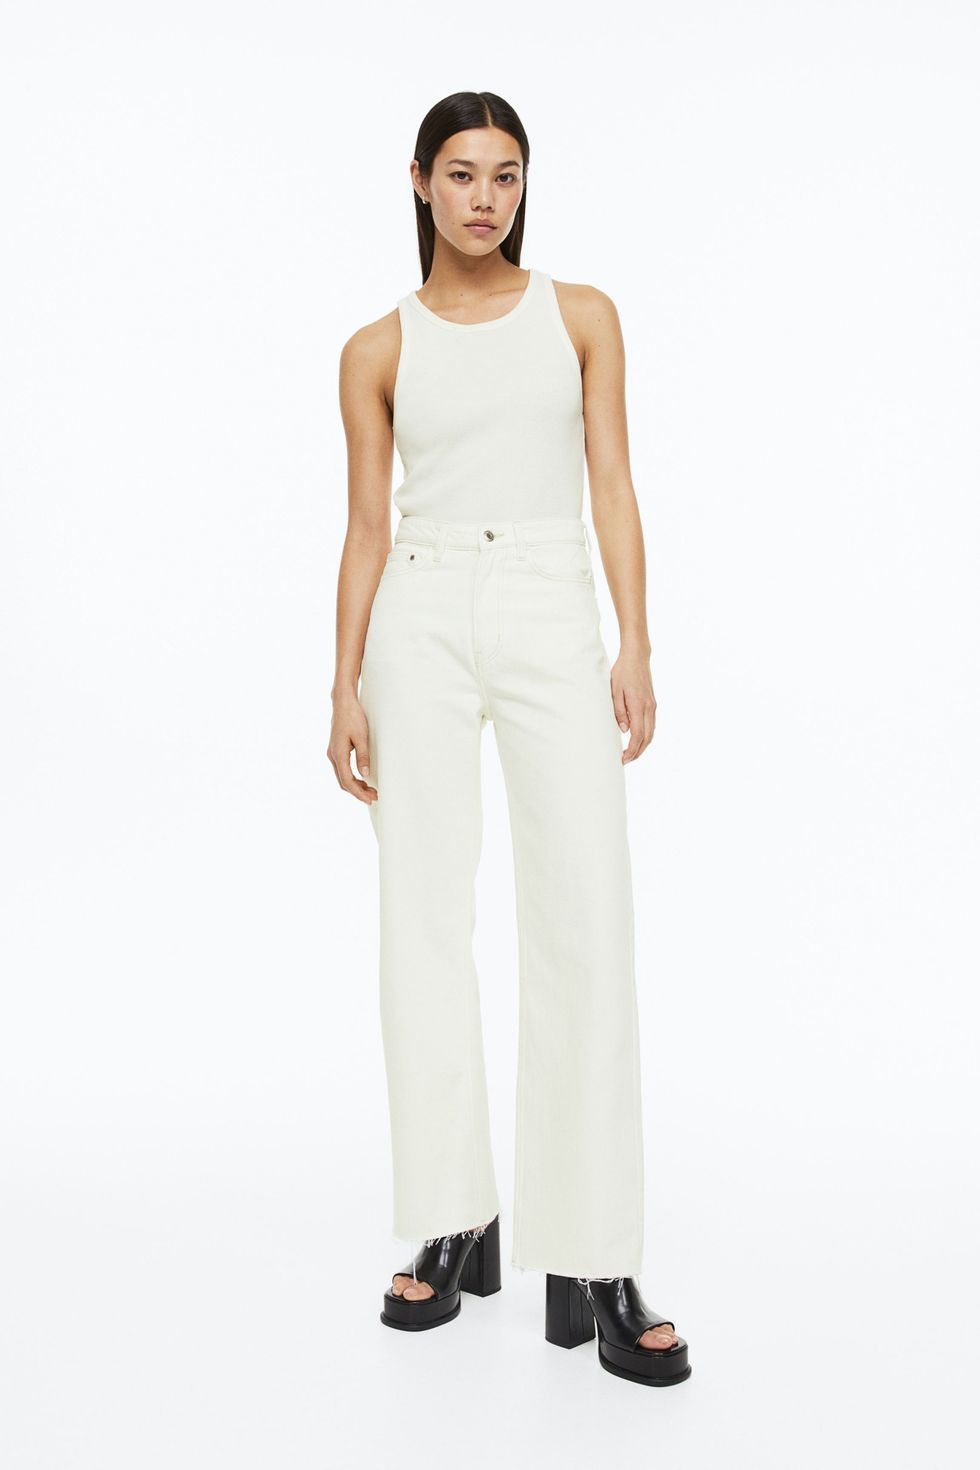 White Jeans for Summer — Sophisticaited